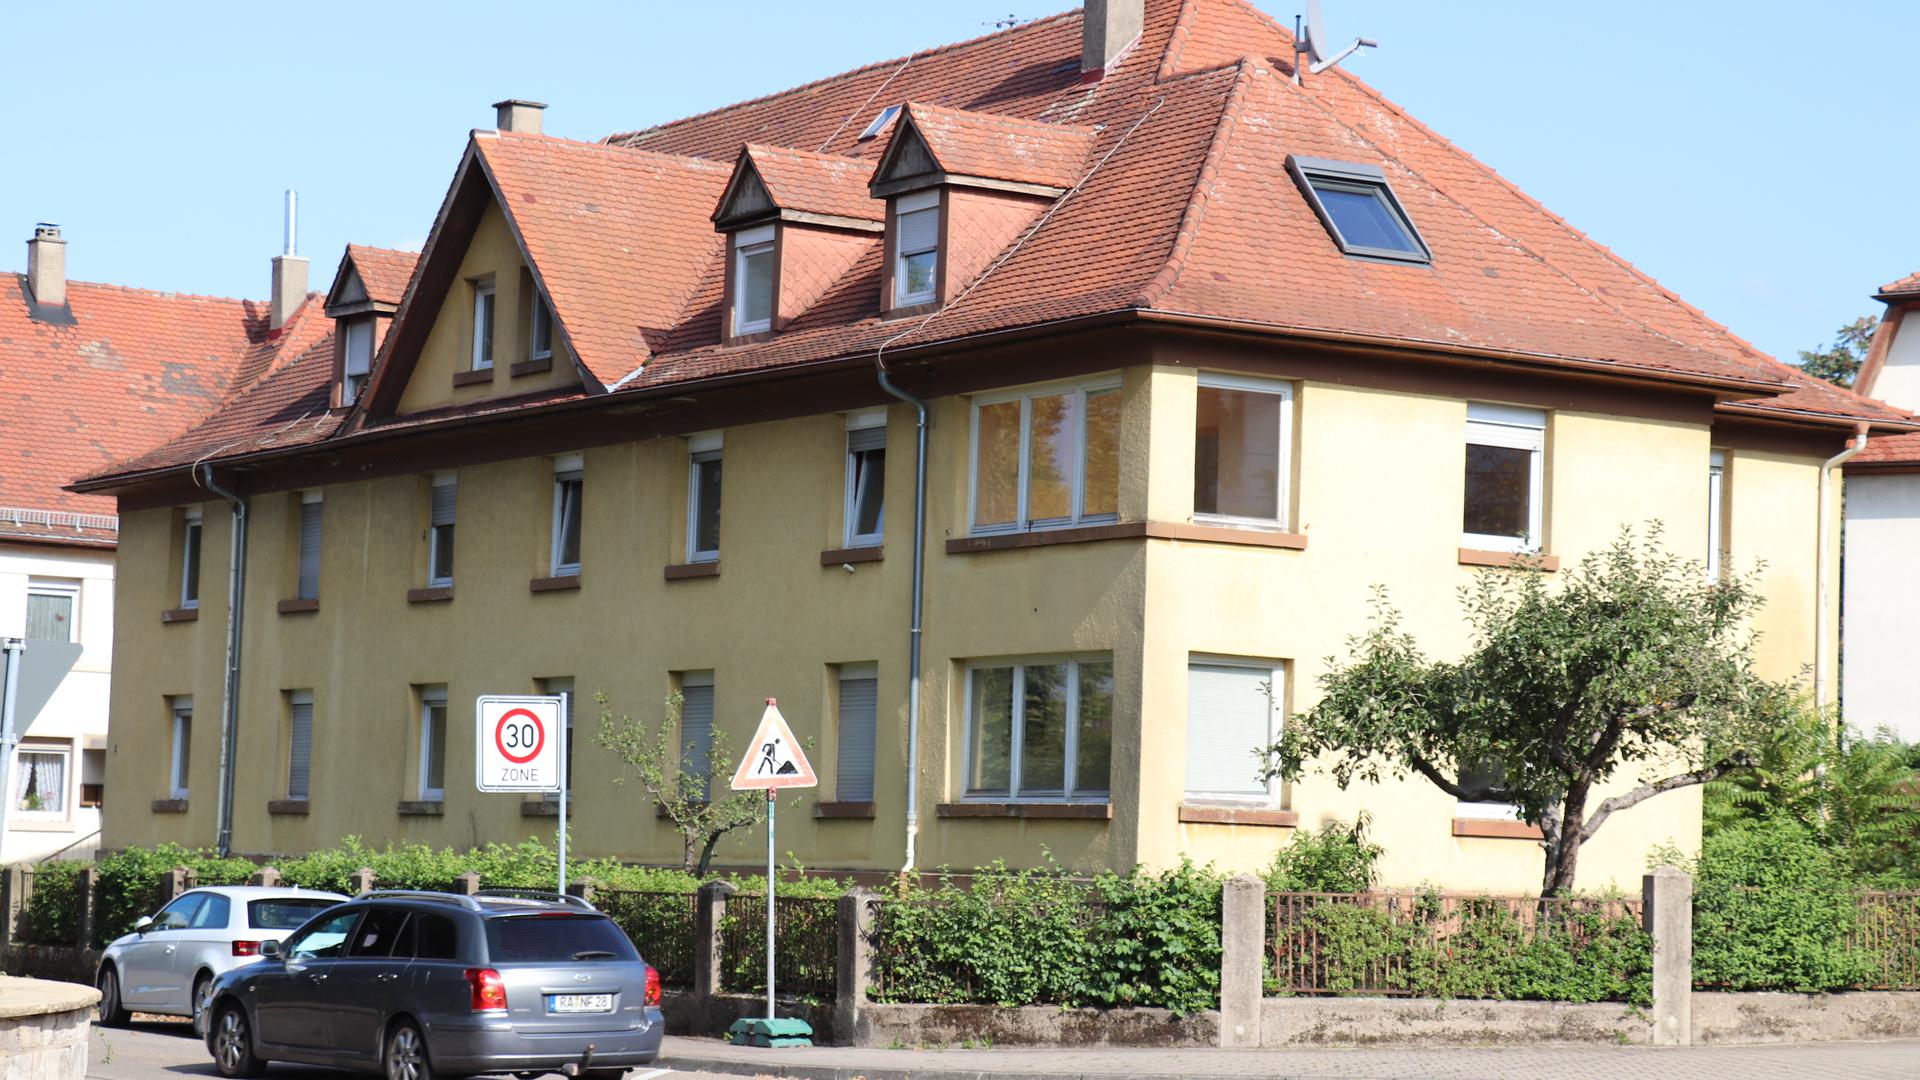 Aus alt wird neu: 2,4 Millionen Euro investierte die Baugenossenschaft Gartenstadt in das Gebäude an der Ecke Gartenstraße/An der Ludwigsfeste.